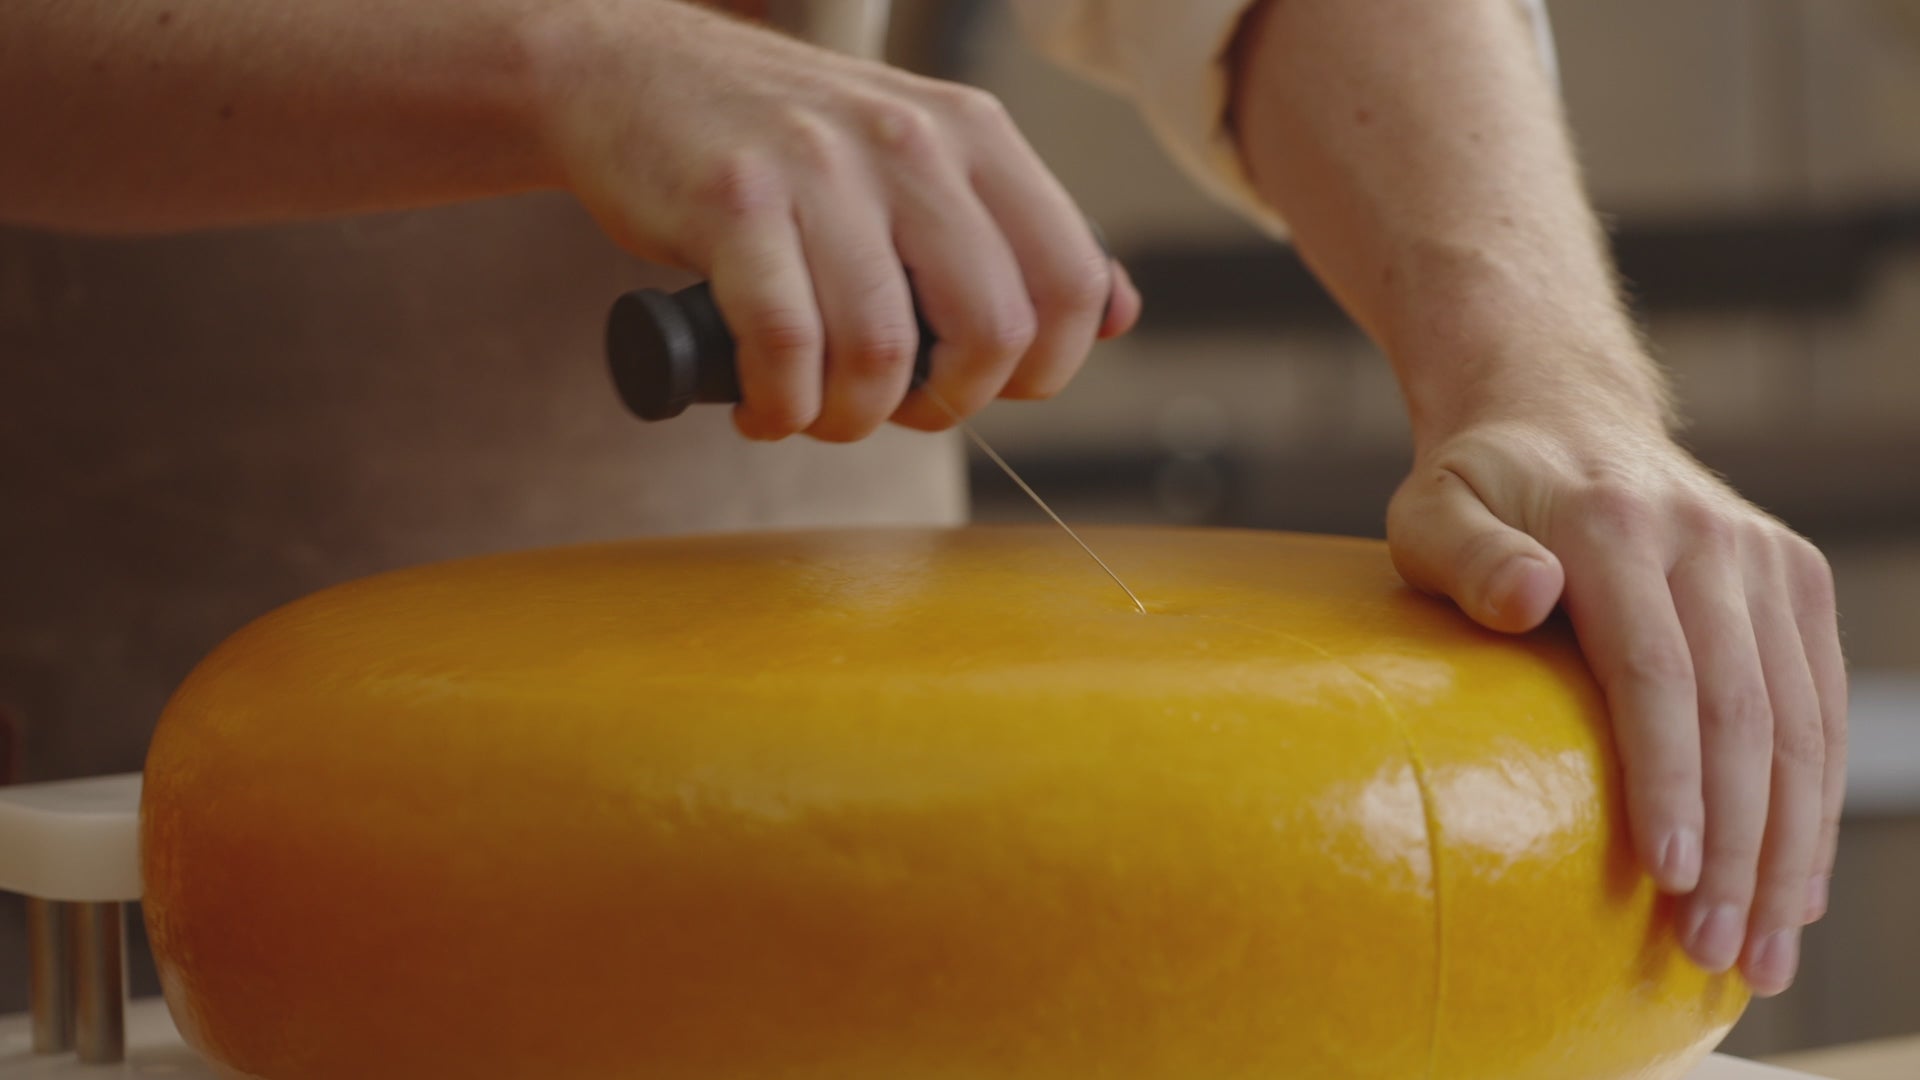 Boska coupe fromage M 14,5 cm, 602614  Achetez à prix avantageux chez  knivesandtools.be